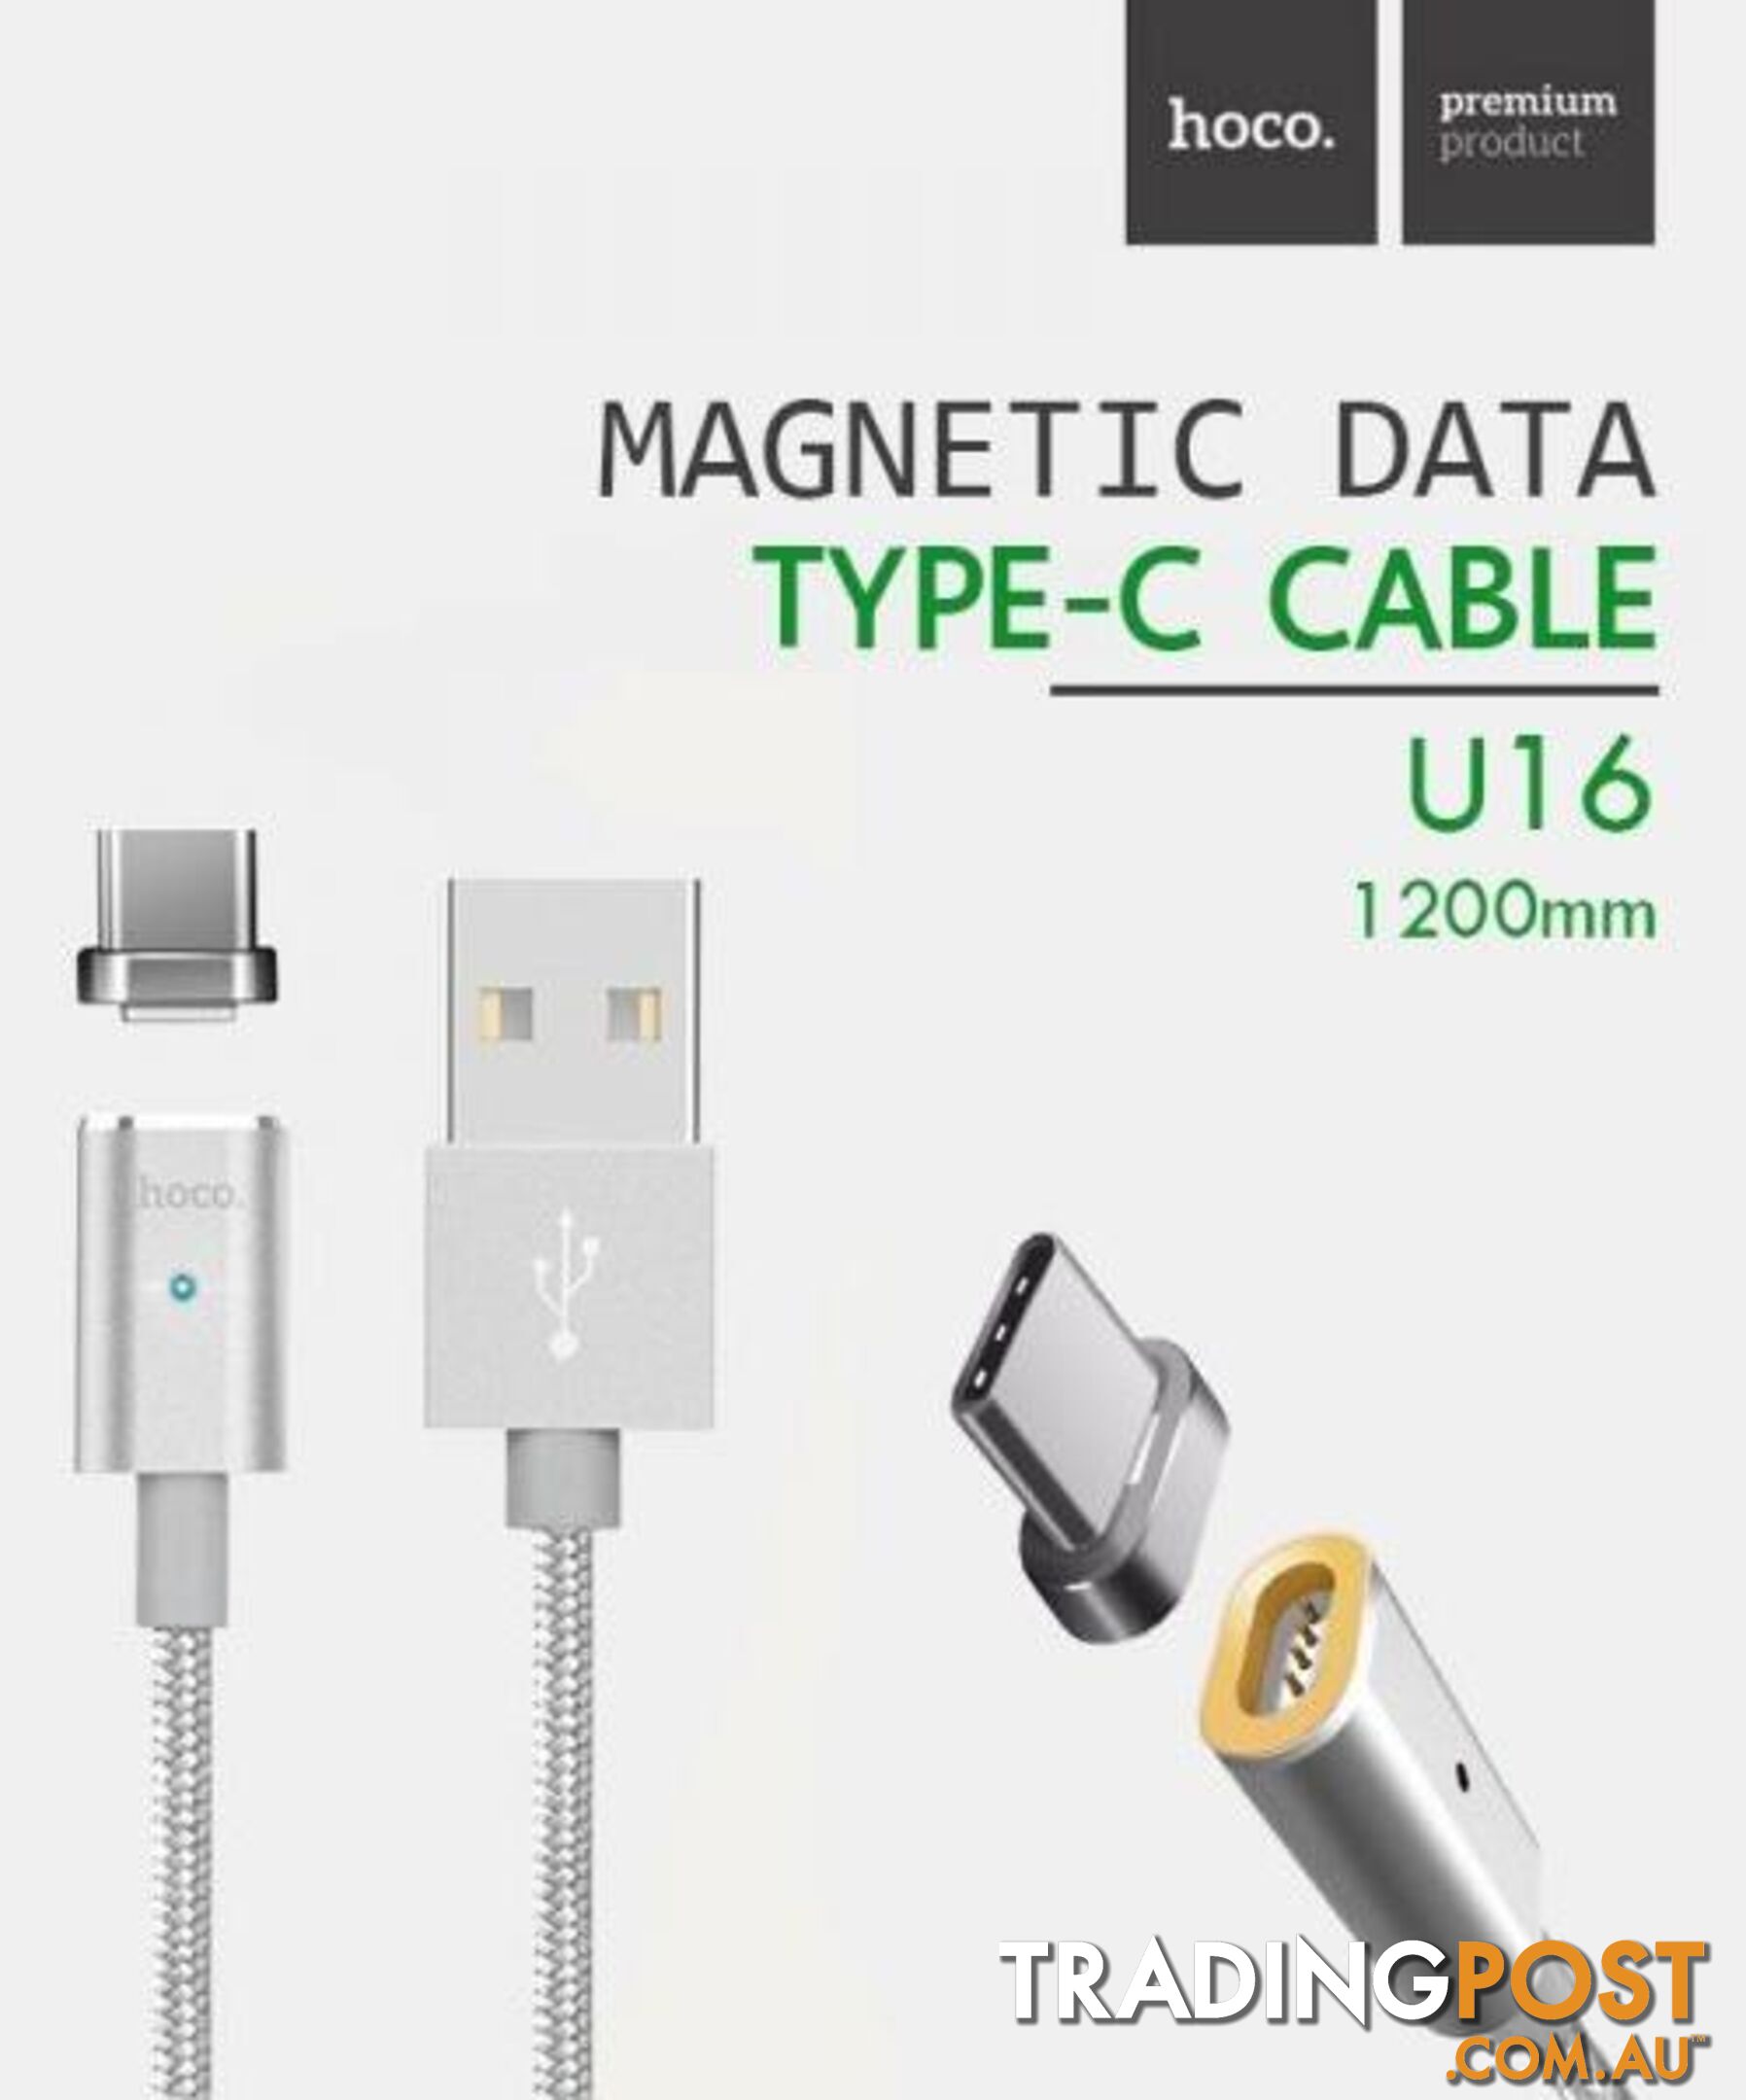 Hoco Premium - Magnetic Cable (U16) - 100208 - Cables